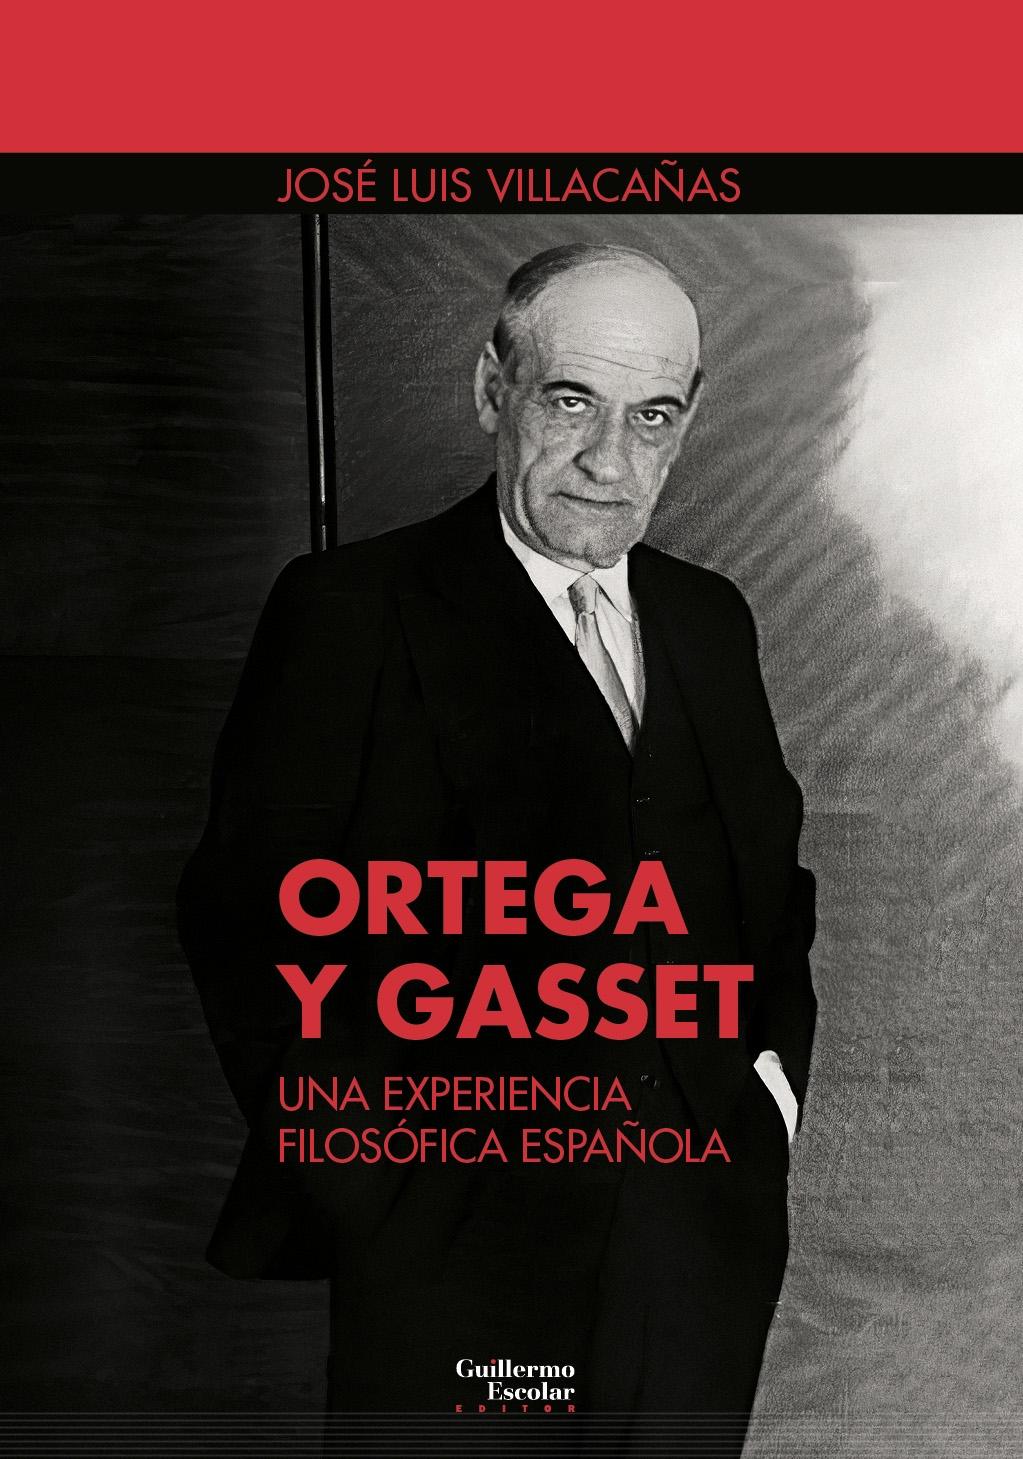 ORTEGA Y GASSET  "UNA EXPERIENCIA FILOSOFICA ESPAÑOLA". 